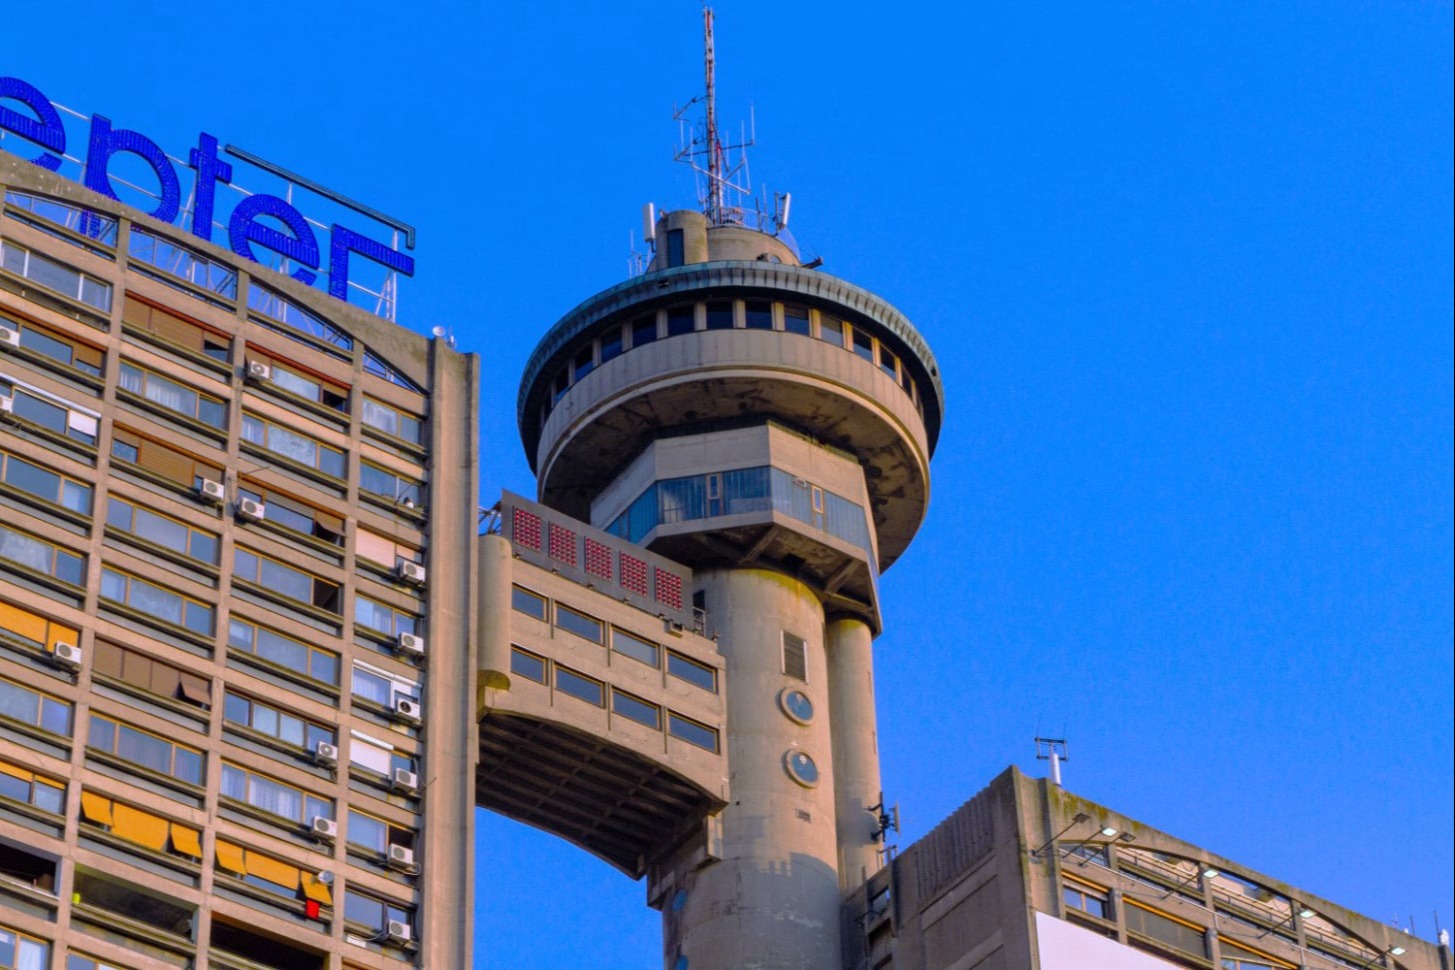 Genex tower in Belgrade